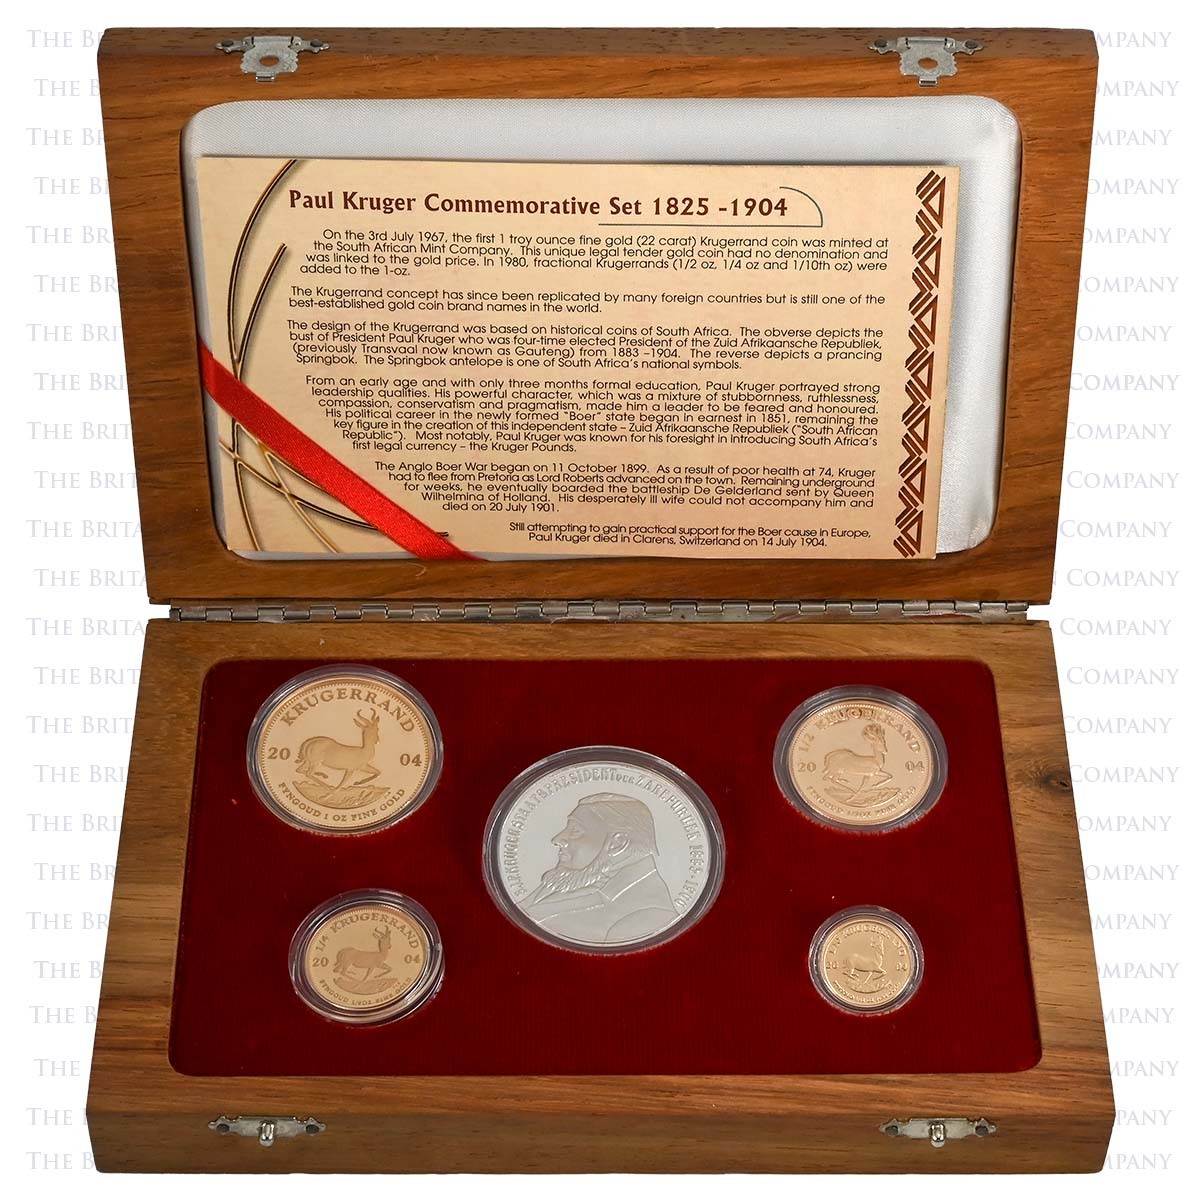 2010 4 Coin Gold Proof Krugerrand Set Paul Kruger Boxed